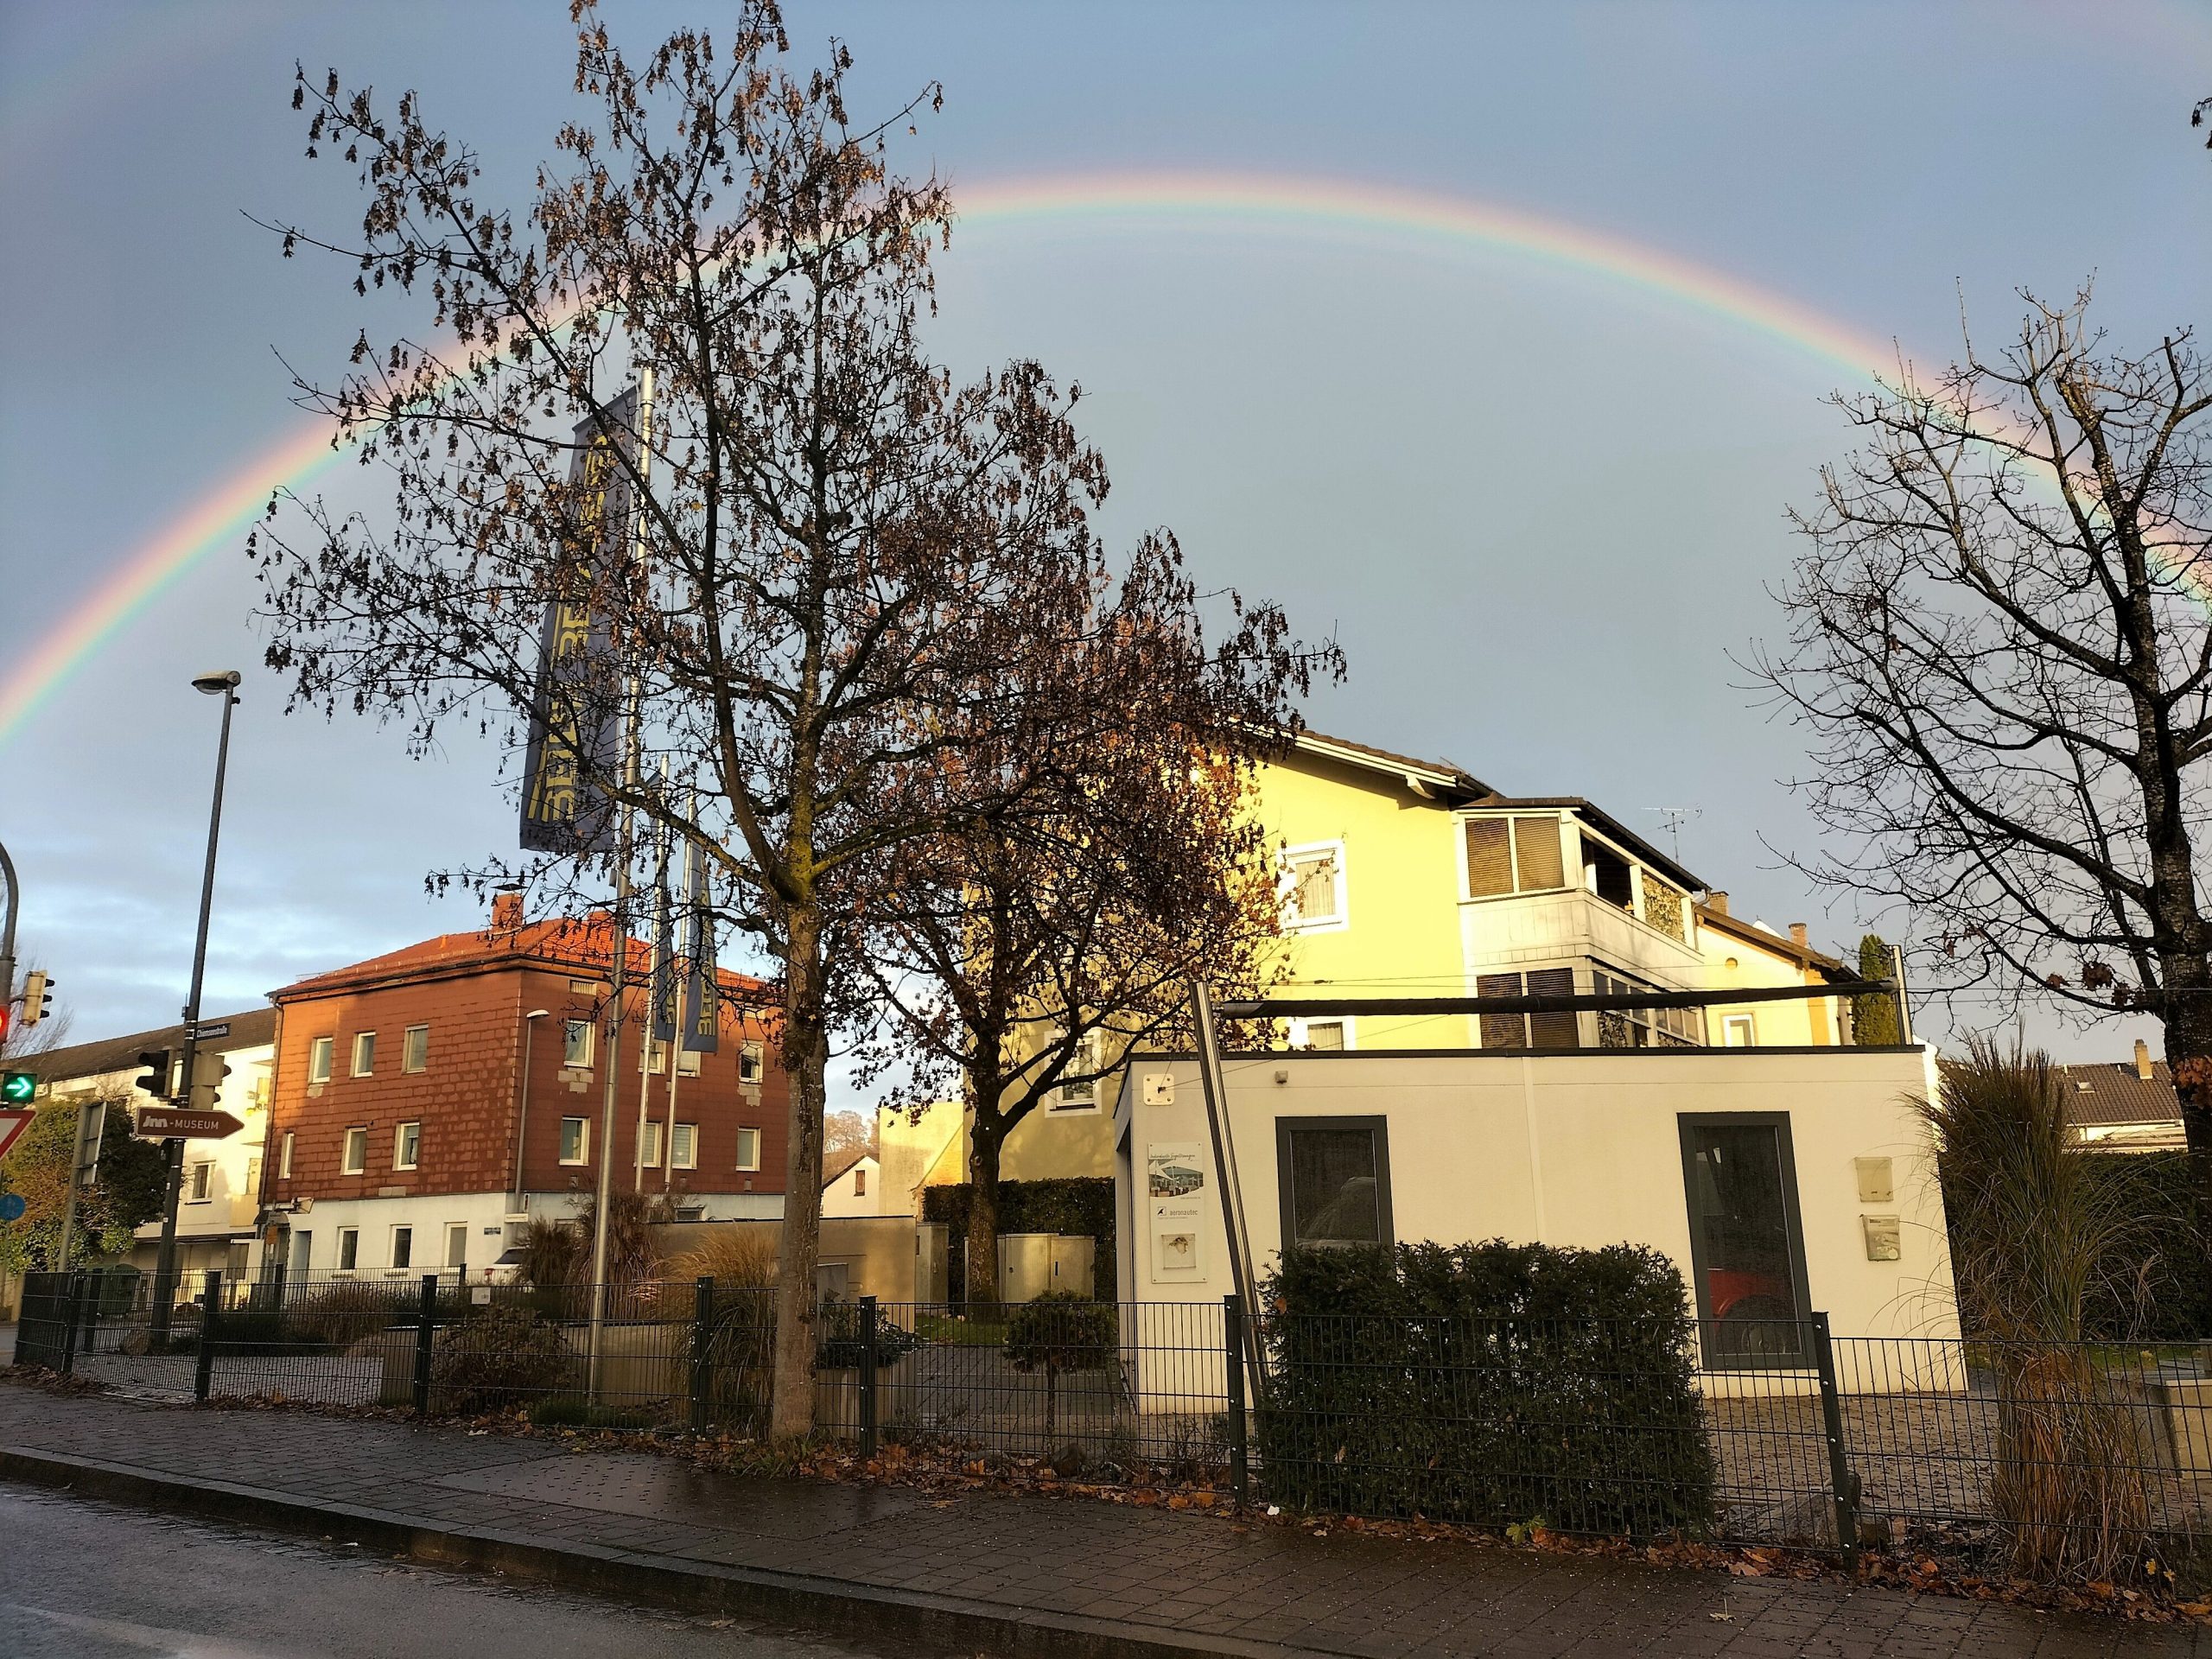 Regenbogen über Rosenheim, fotografiert in der Chiemseestraße